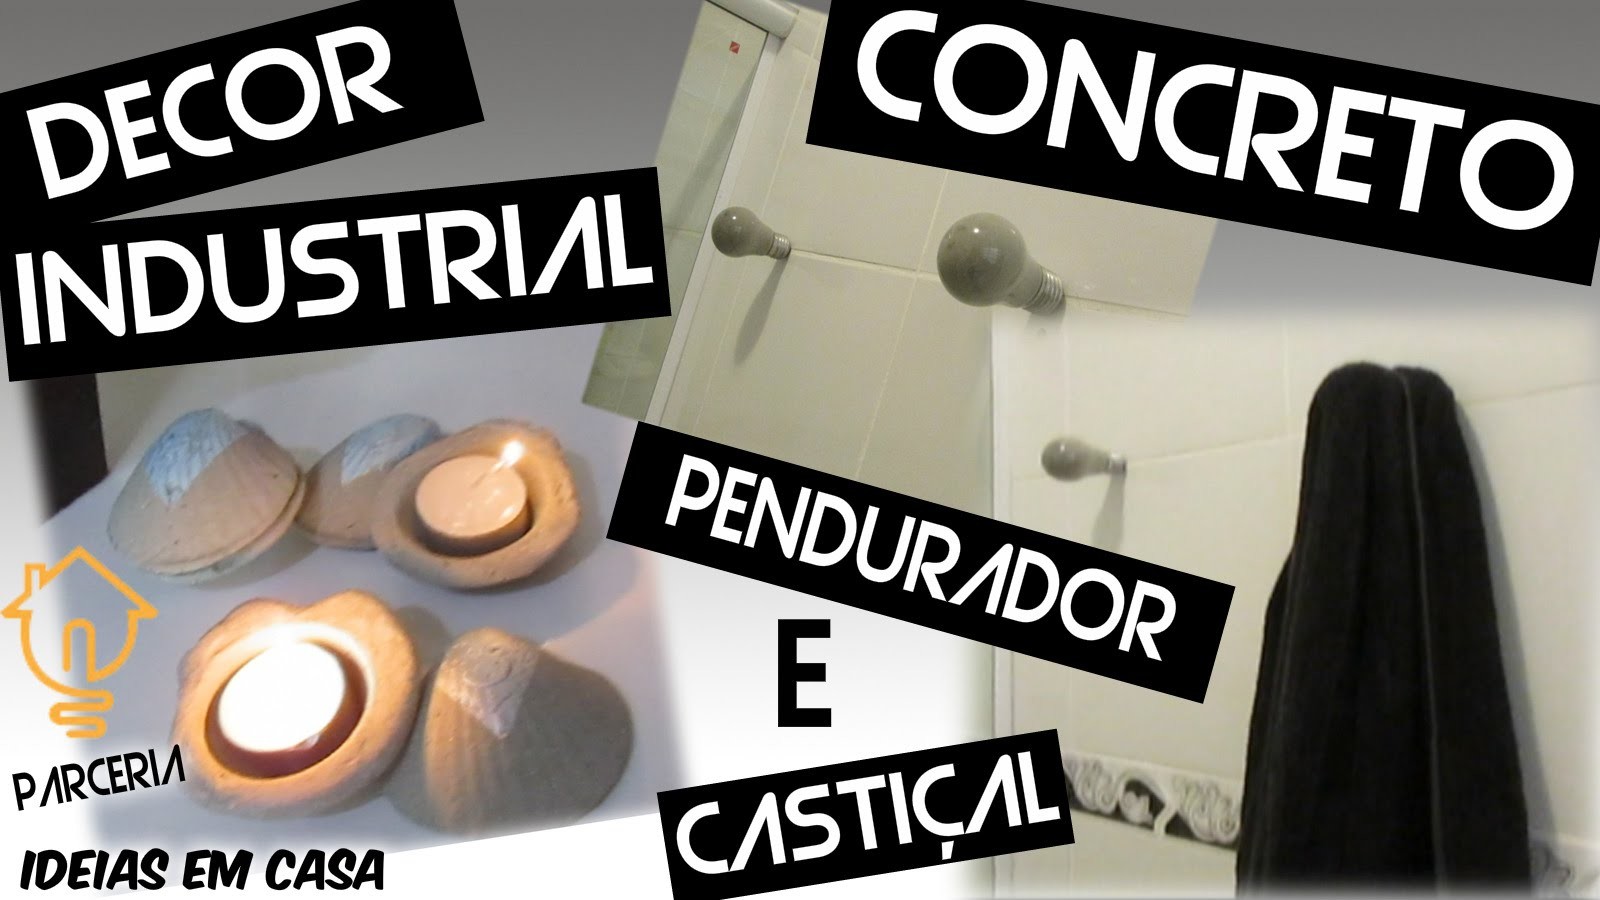 DIY :: PENDURADOR E CASTIÇAL DE CONCRETO :: DECOR INDUSTRIAL - Parceria com Ideias em Casa